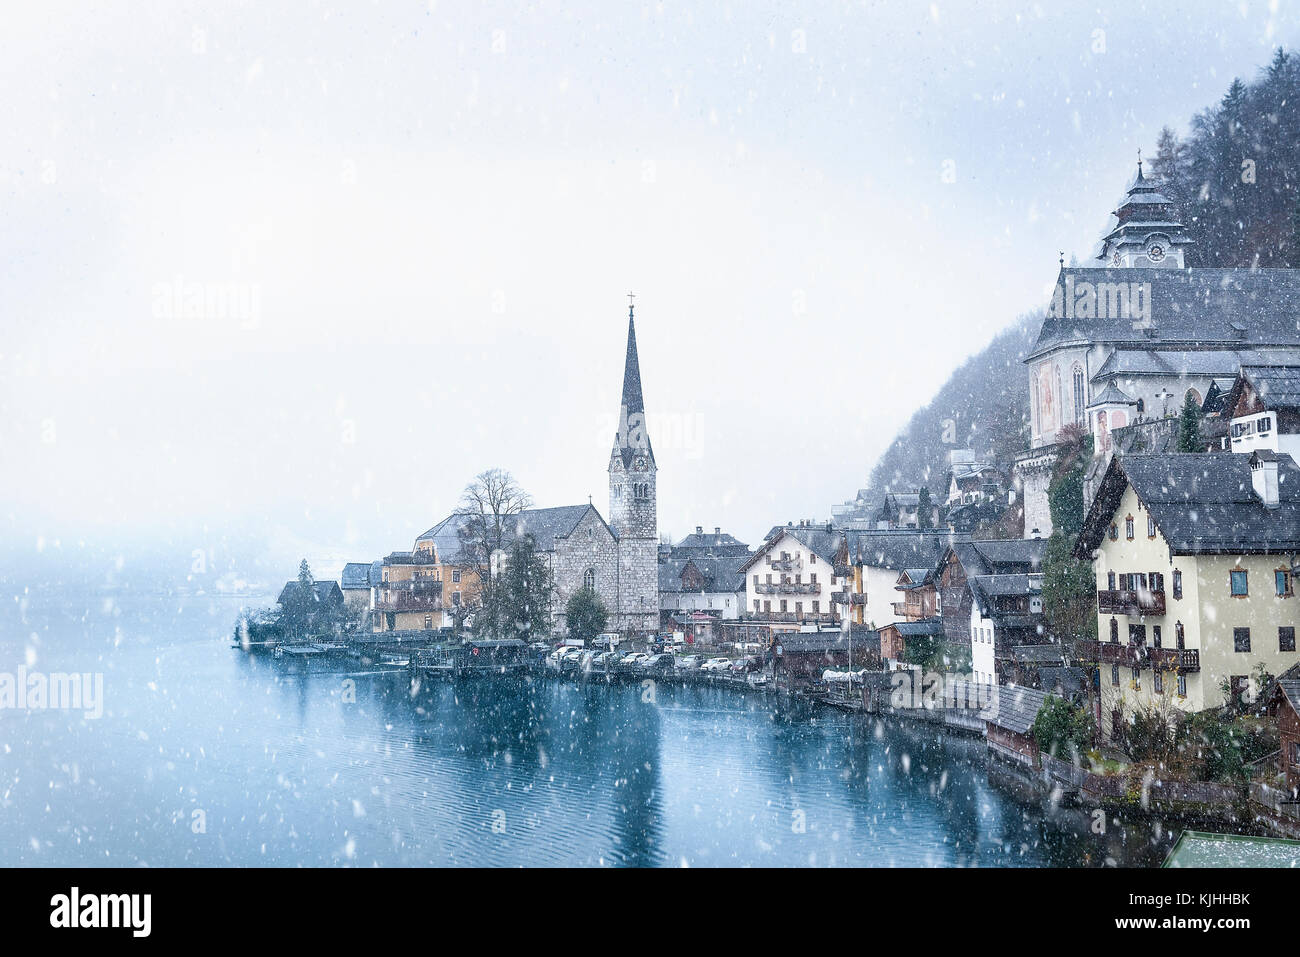 Idyllische winter bild mit der berühmten Stadt Hallstatt, einem der Welterbestätten in Österreich, gelegen auf dem Hallstätter See Stockfoto